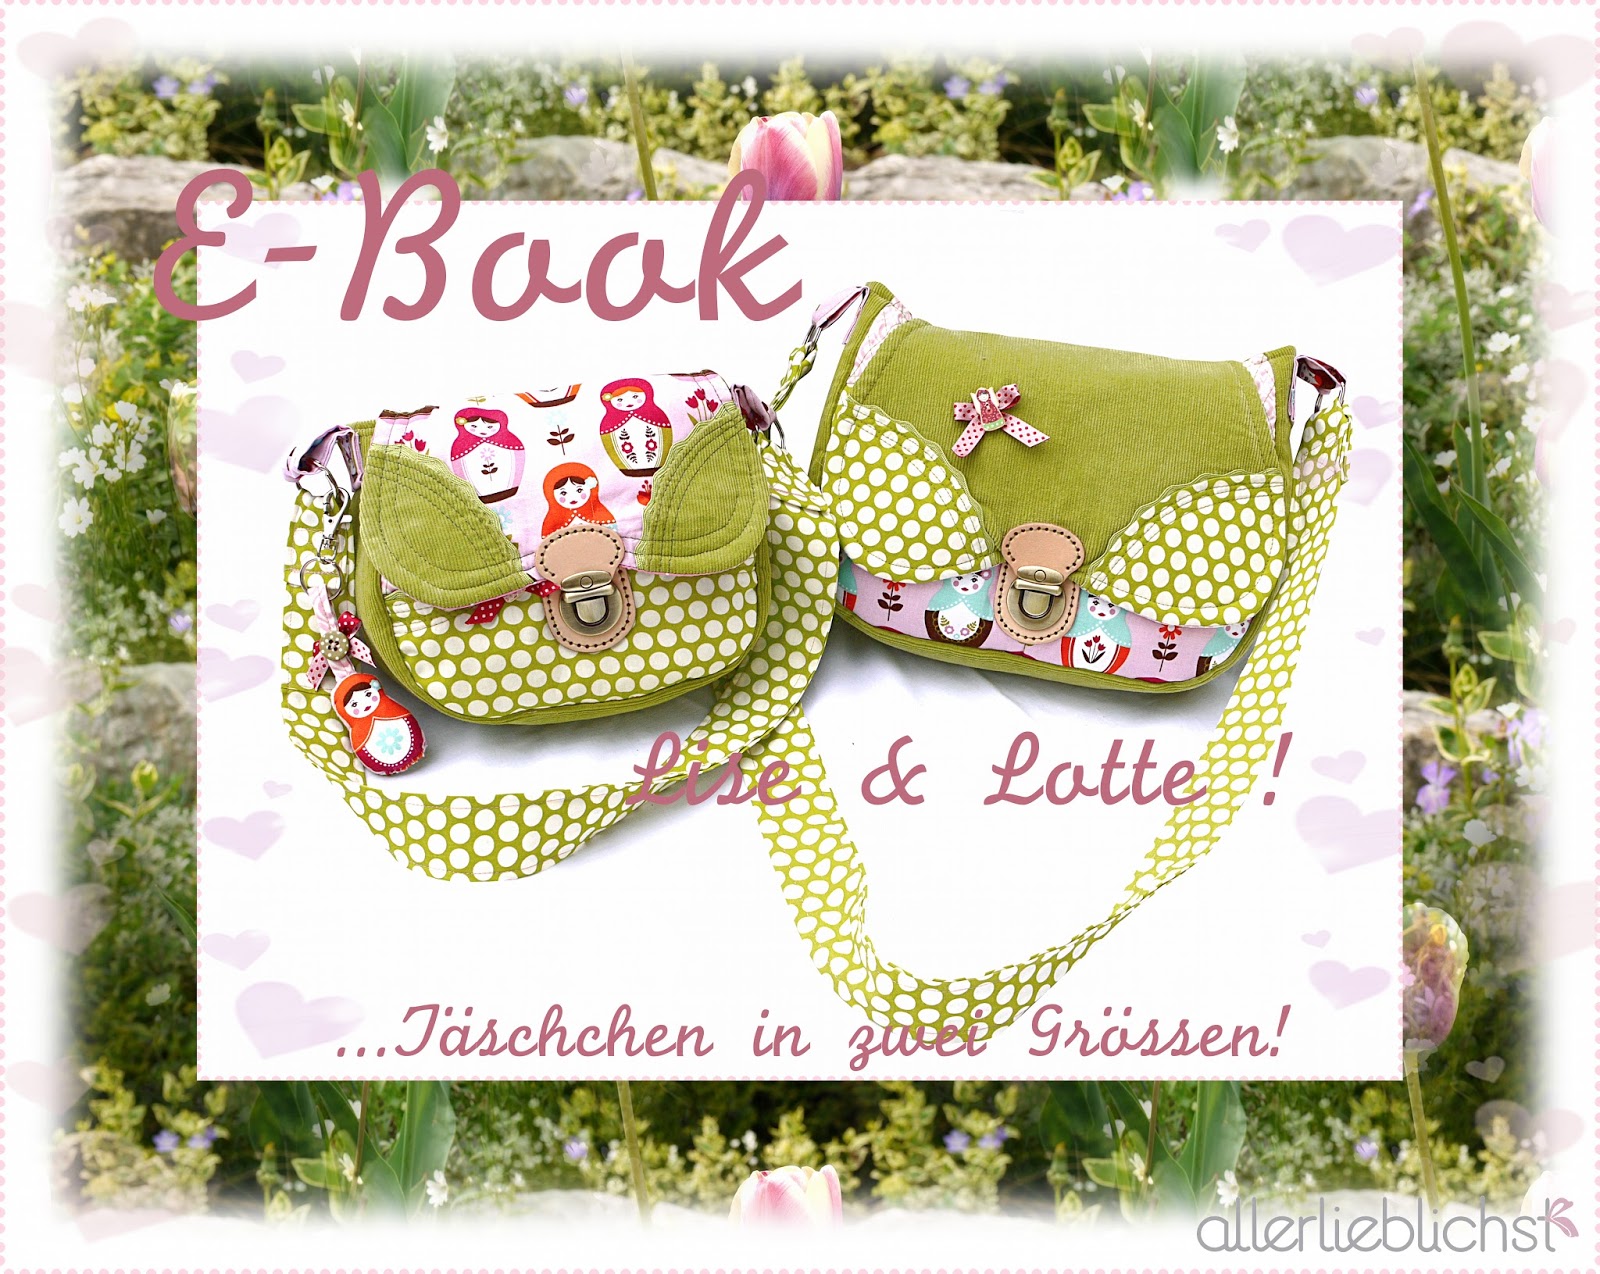  E-Book Liselotte! 